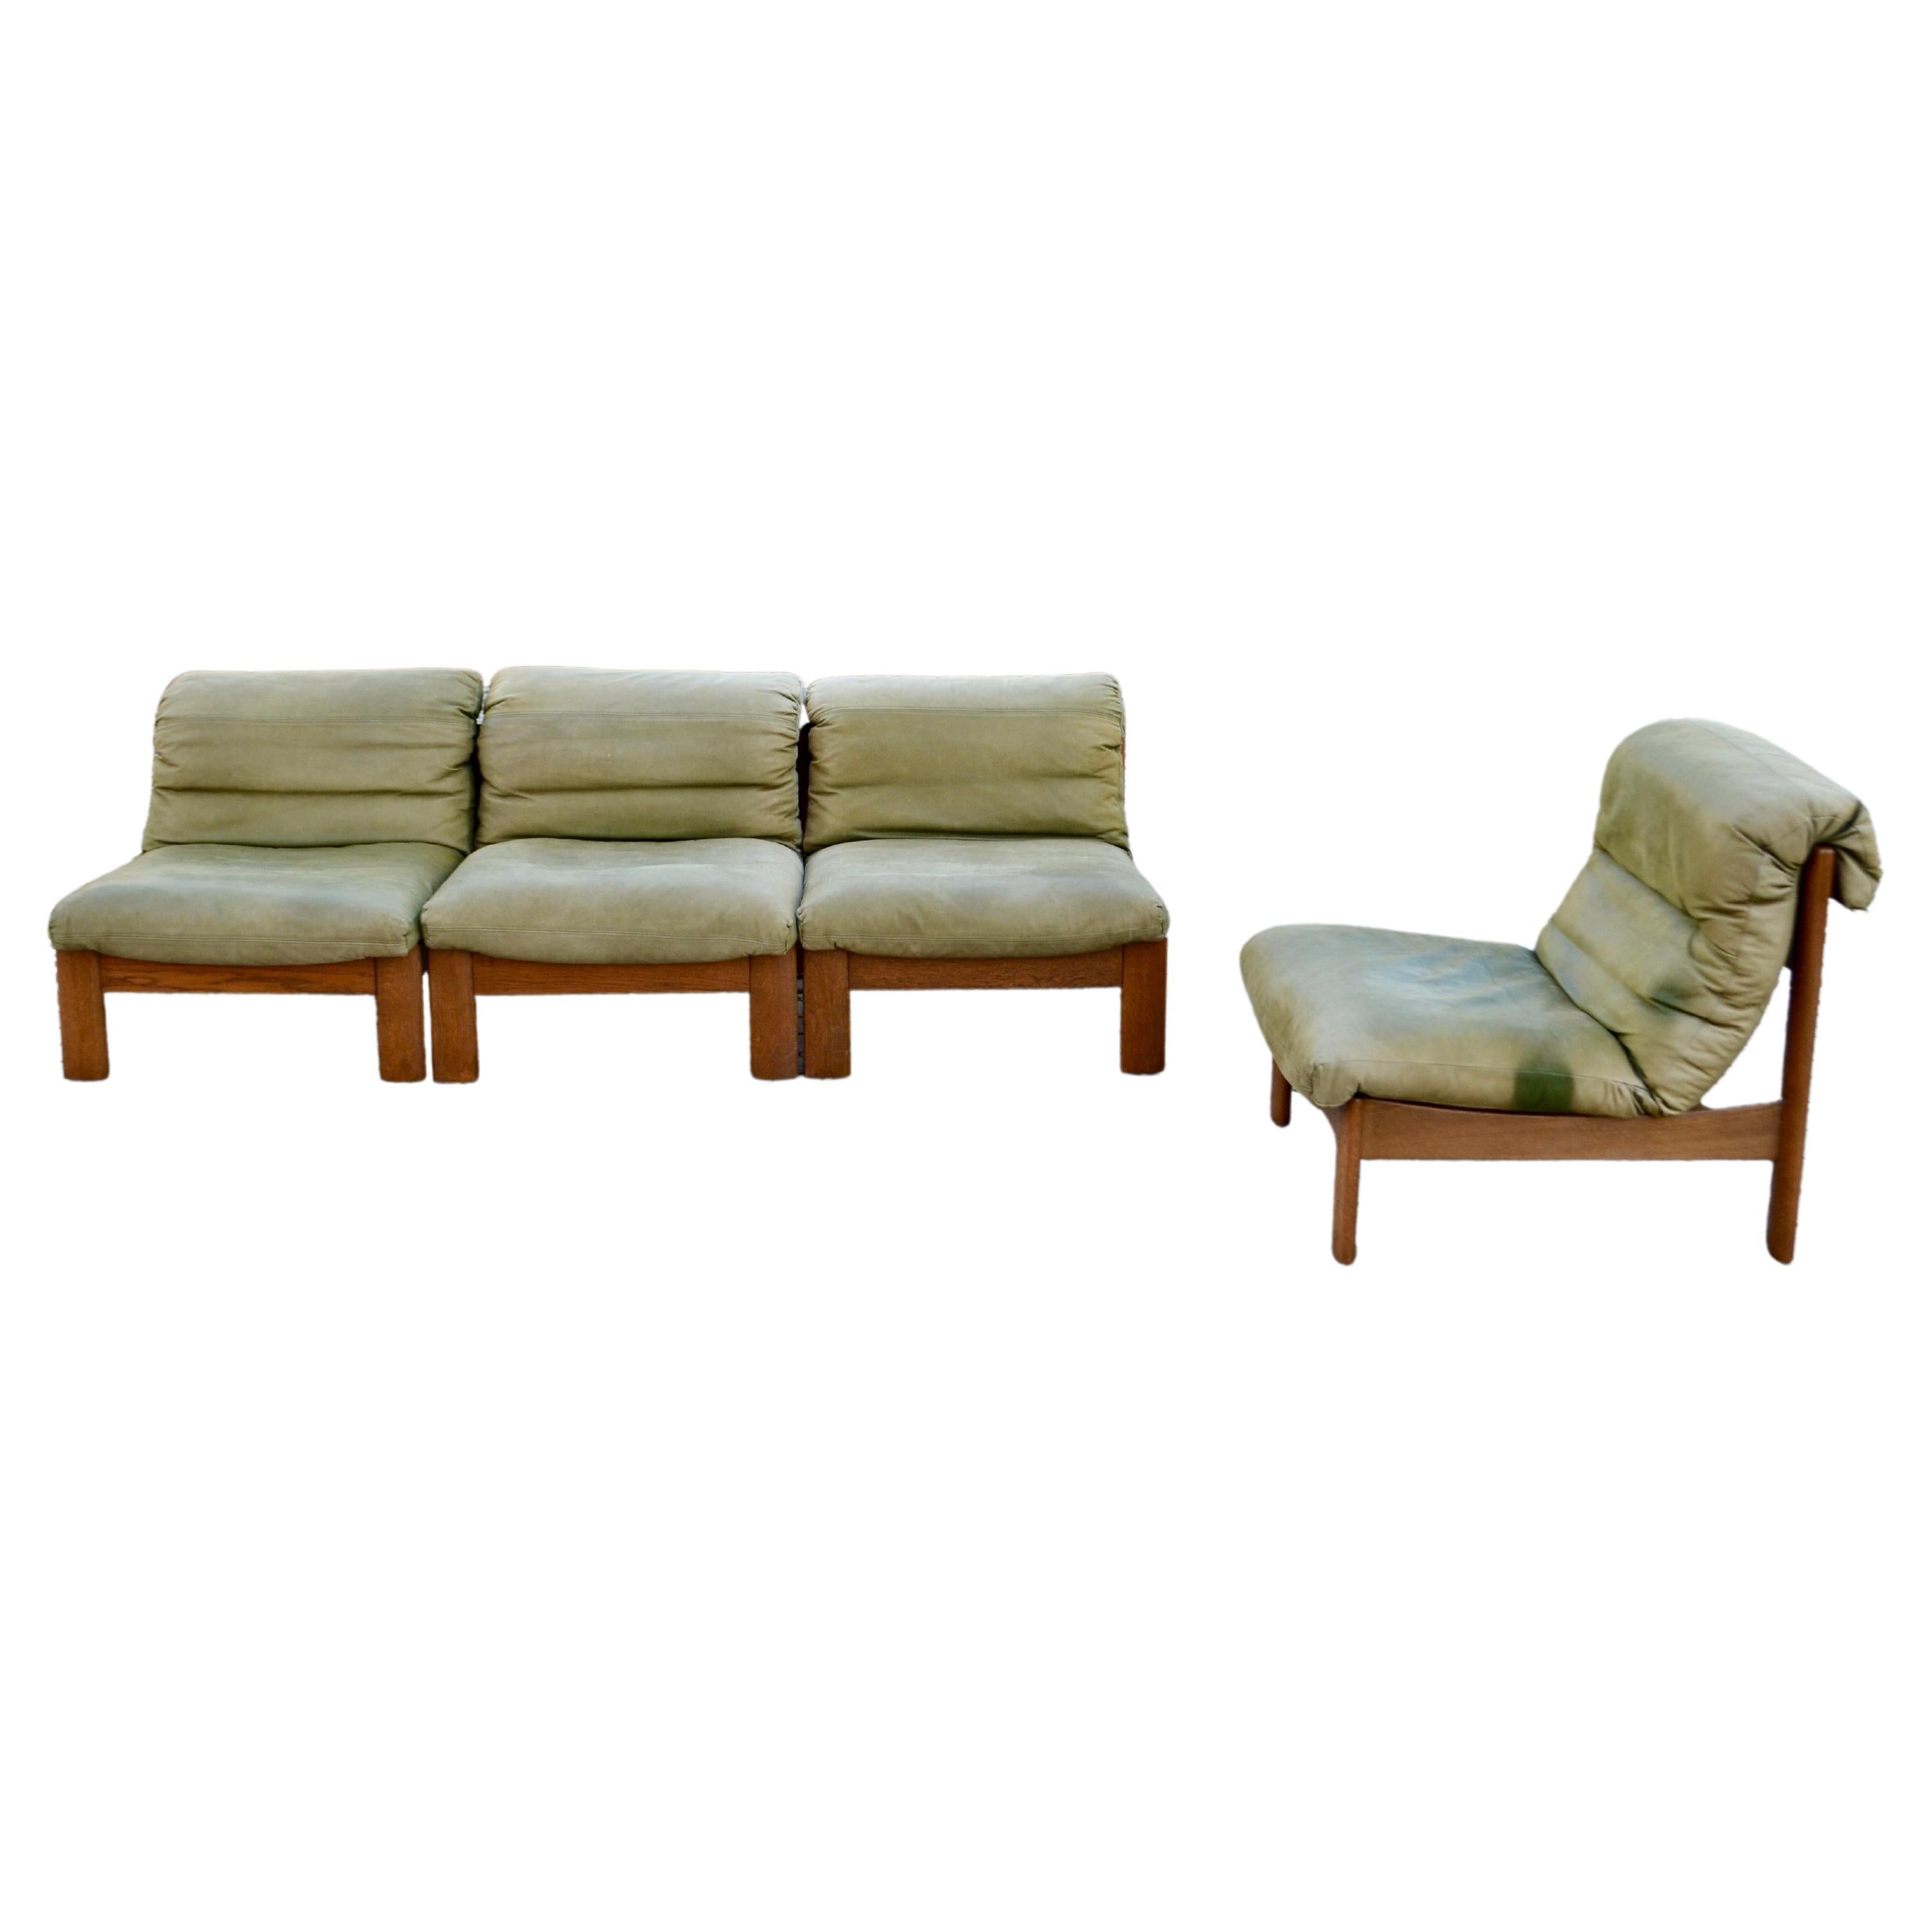 Ces 4 superbes fauteuils/canapés modulaires en cuir ont été fabriqués en Allemagne par Rolf Benz.
C'est un design pur des années 70 avec une forme moderne intemporelle.
Le cuir est de couleur vert aniline nubuk avec un toucher cuir souple.
La